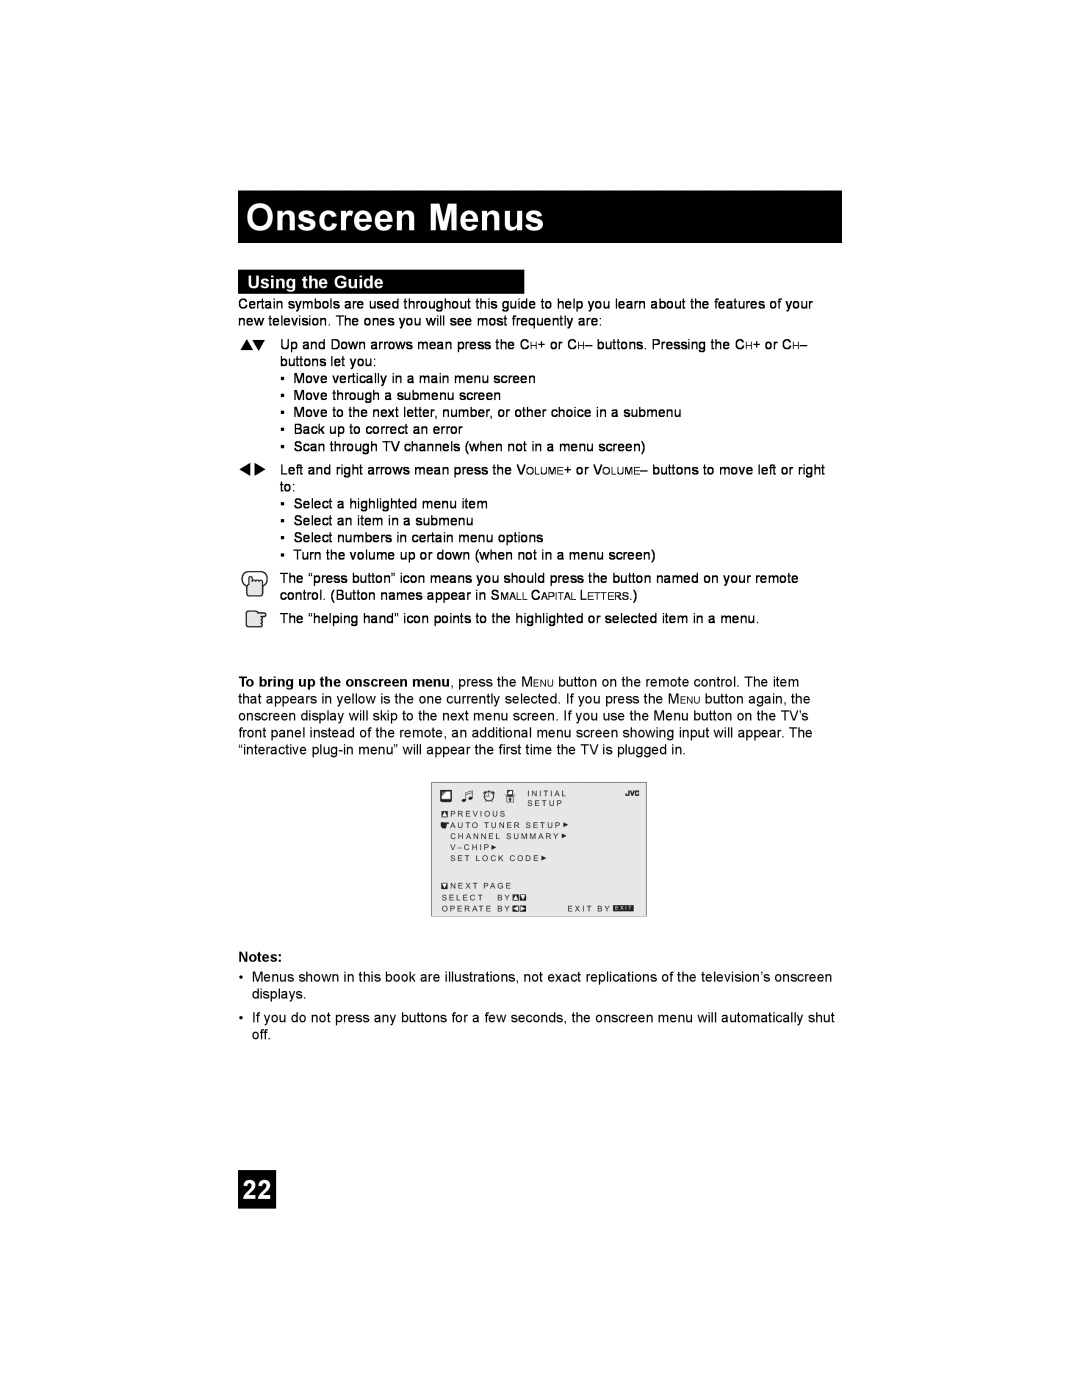 JVC AV 20FA44 manual Onscreen Menus, Using the Guide 